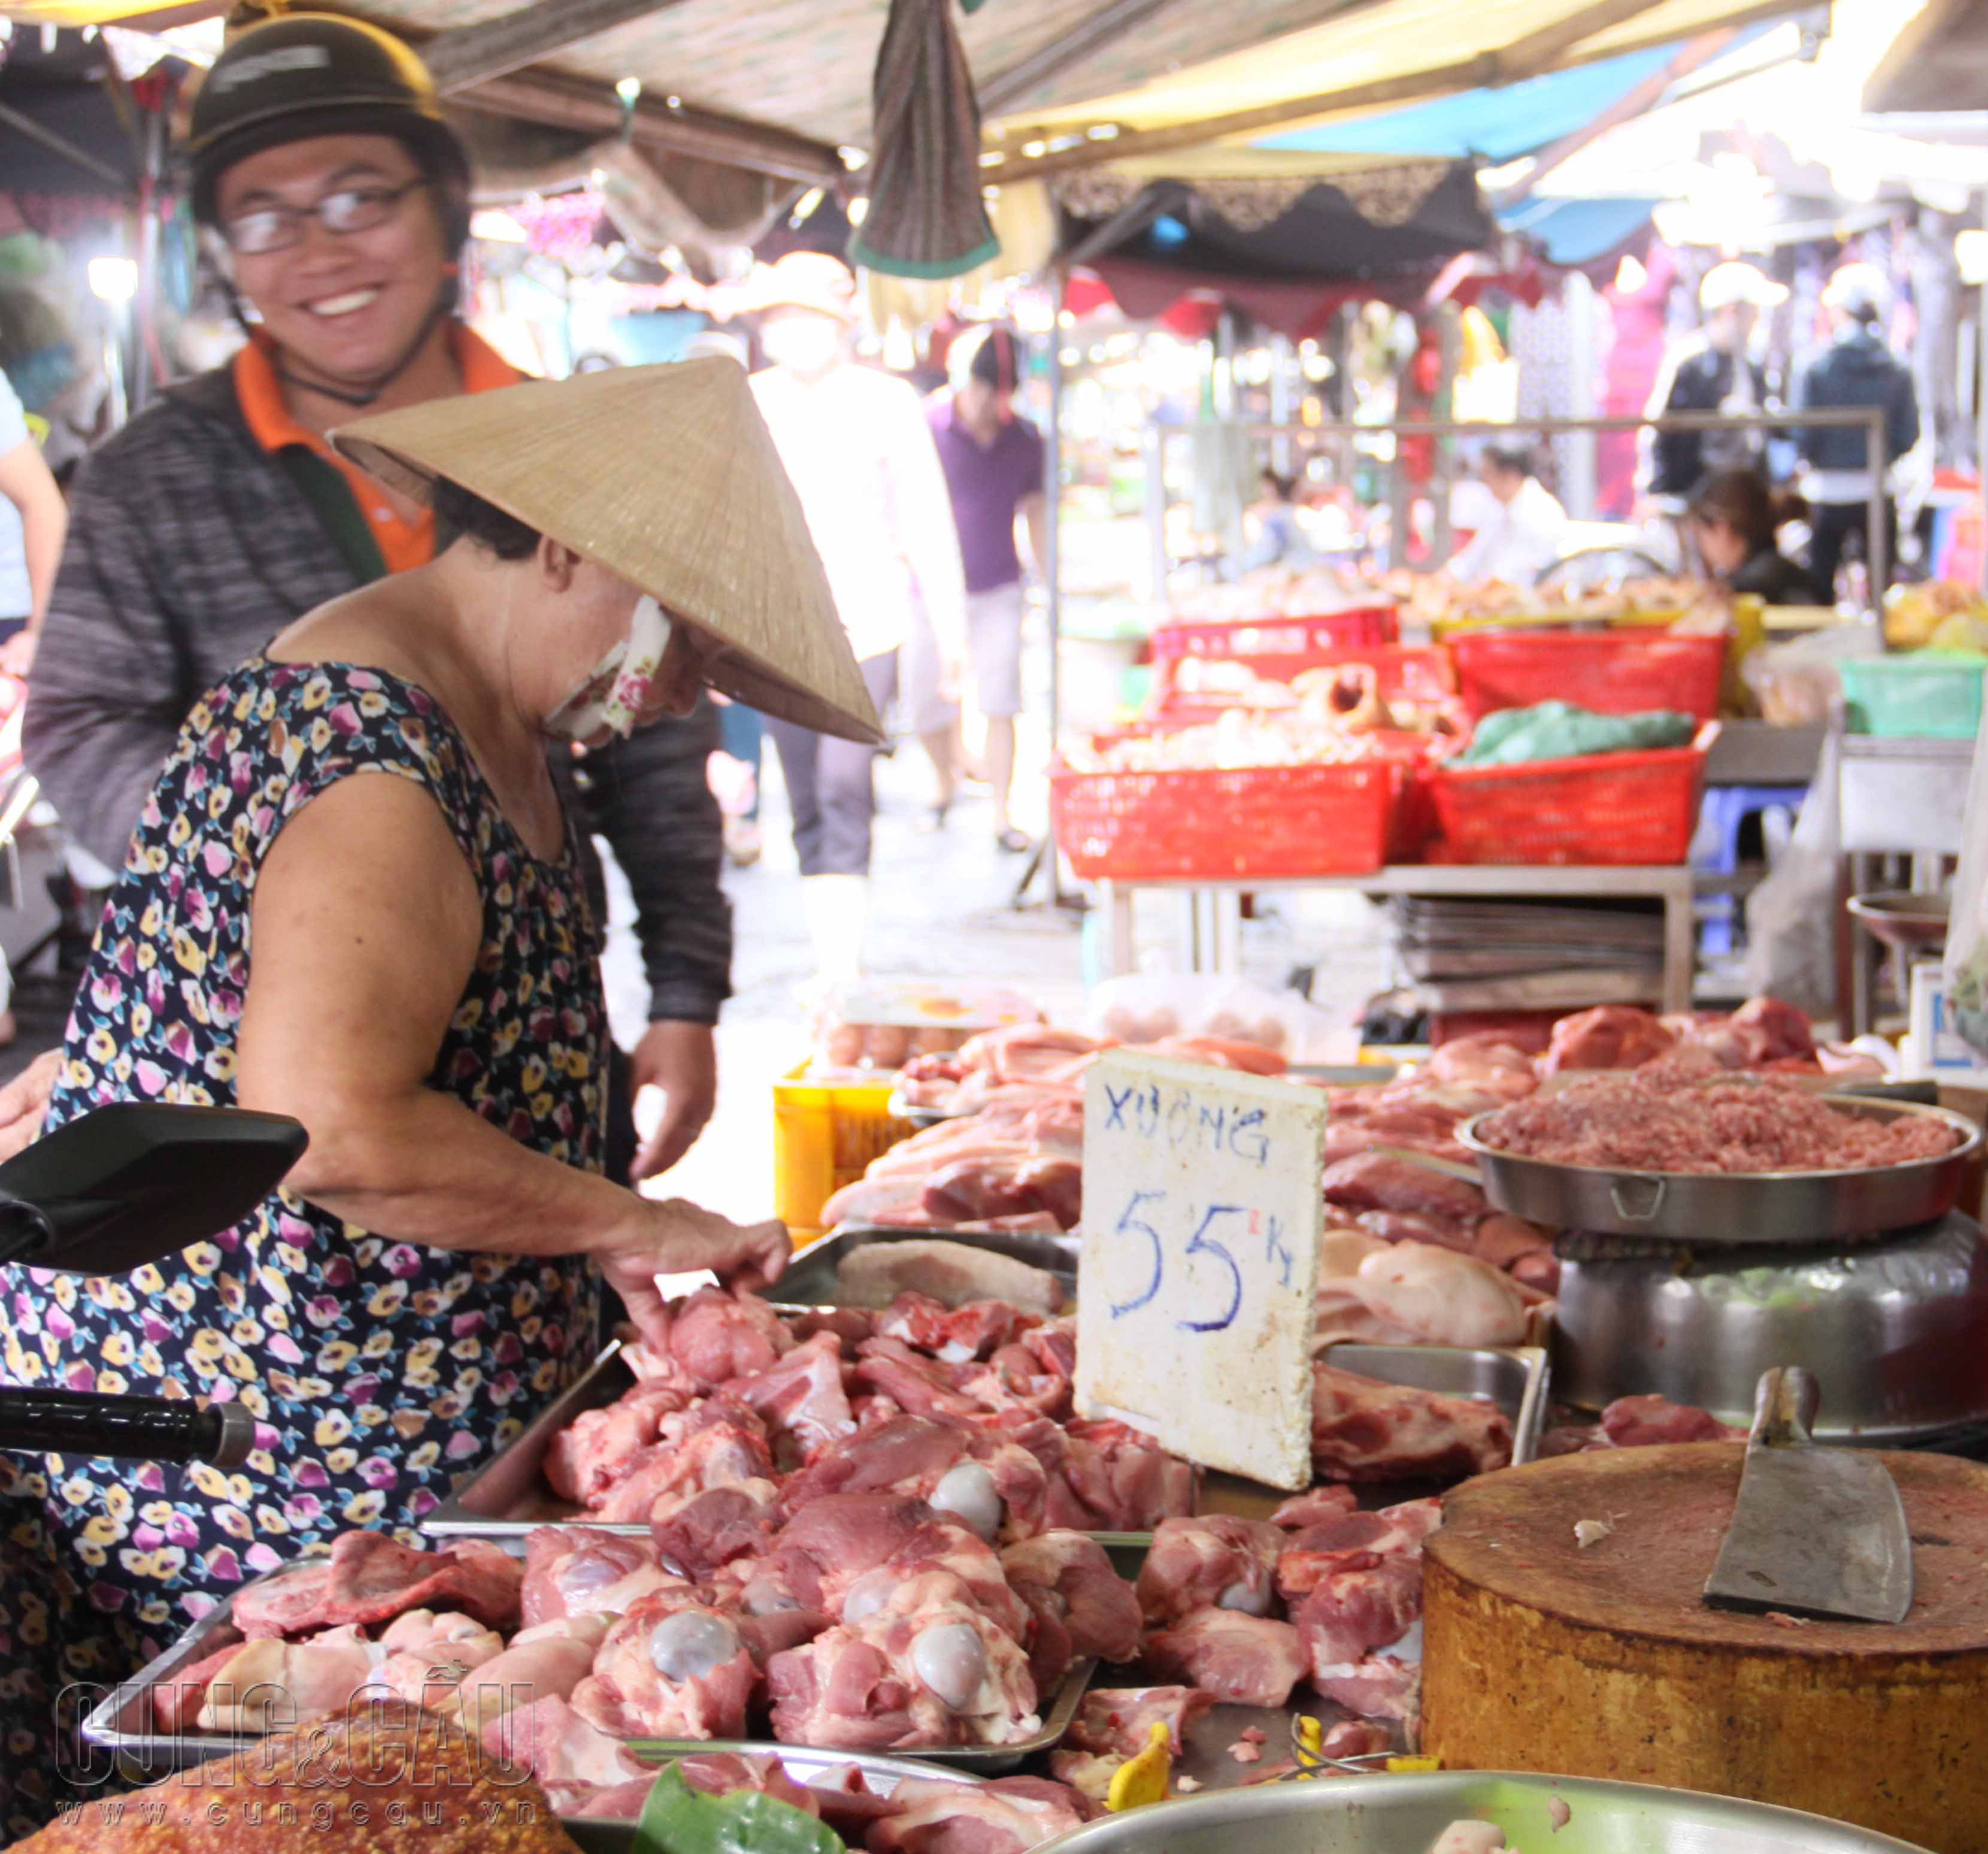 Giá thịt heo bán lẻ tại chợ hiện thấp hơn khá nhiều so với các siêu thị.